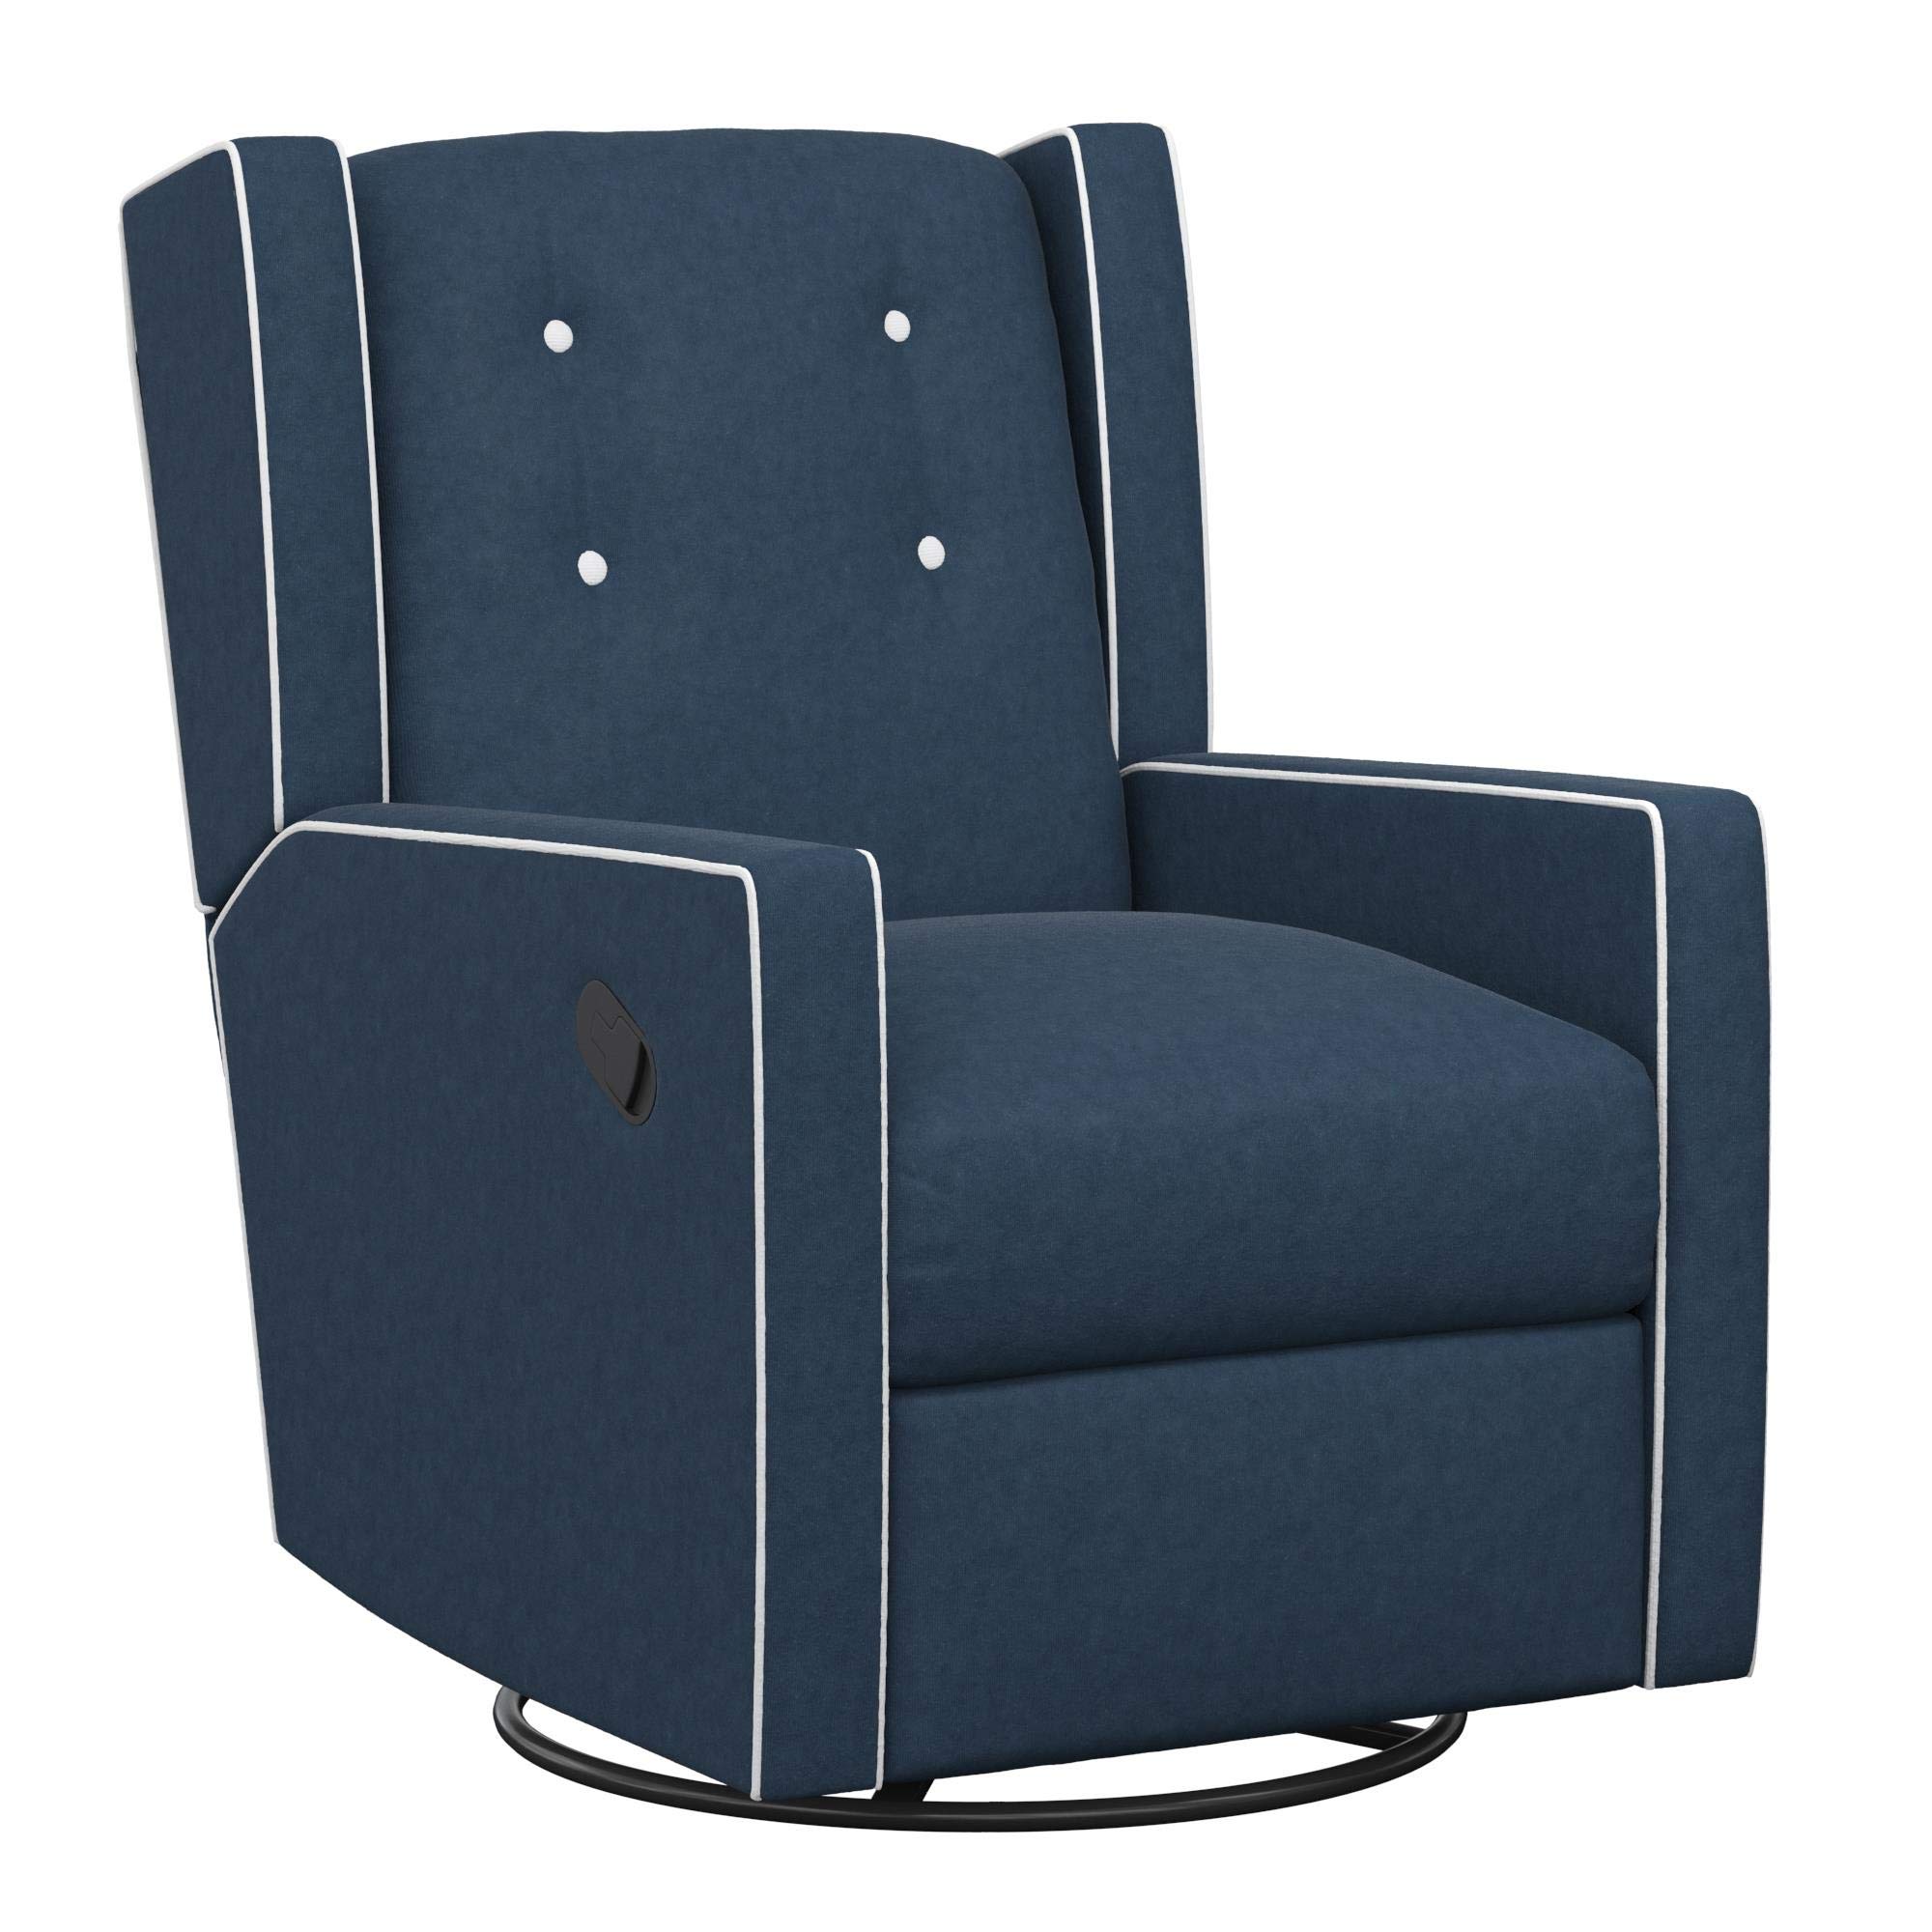 Baby Relax Mikayla 4-in-1 Swivel Glider Rocker Recliner Chair, Dark Blue Velvet